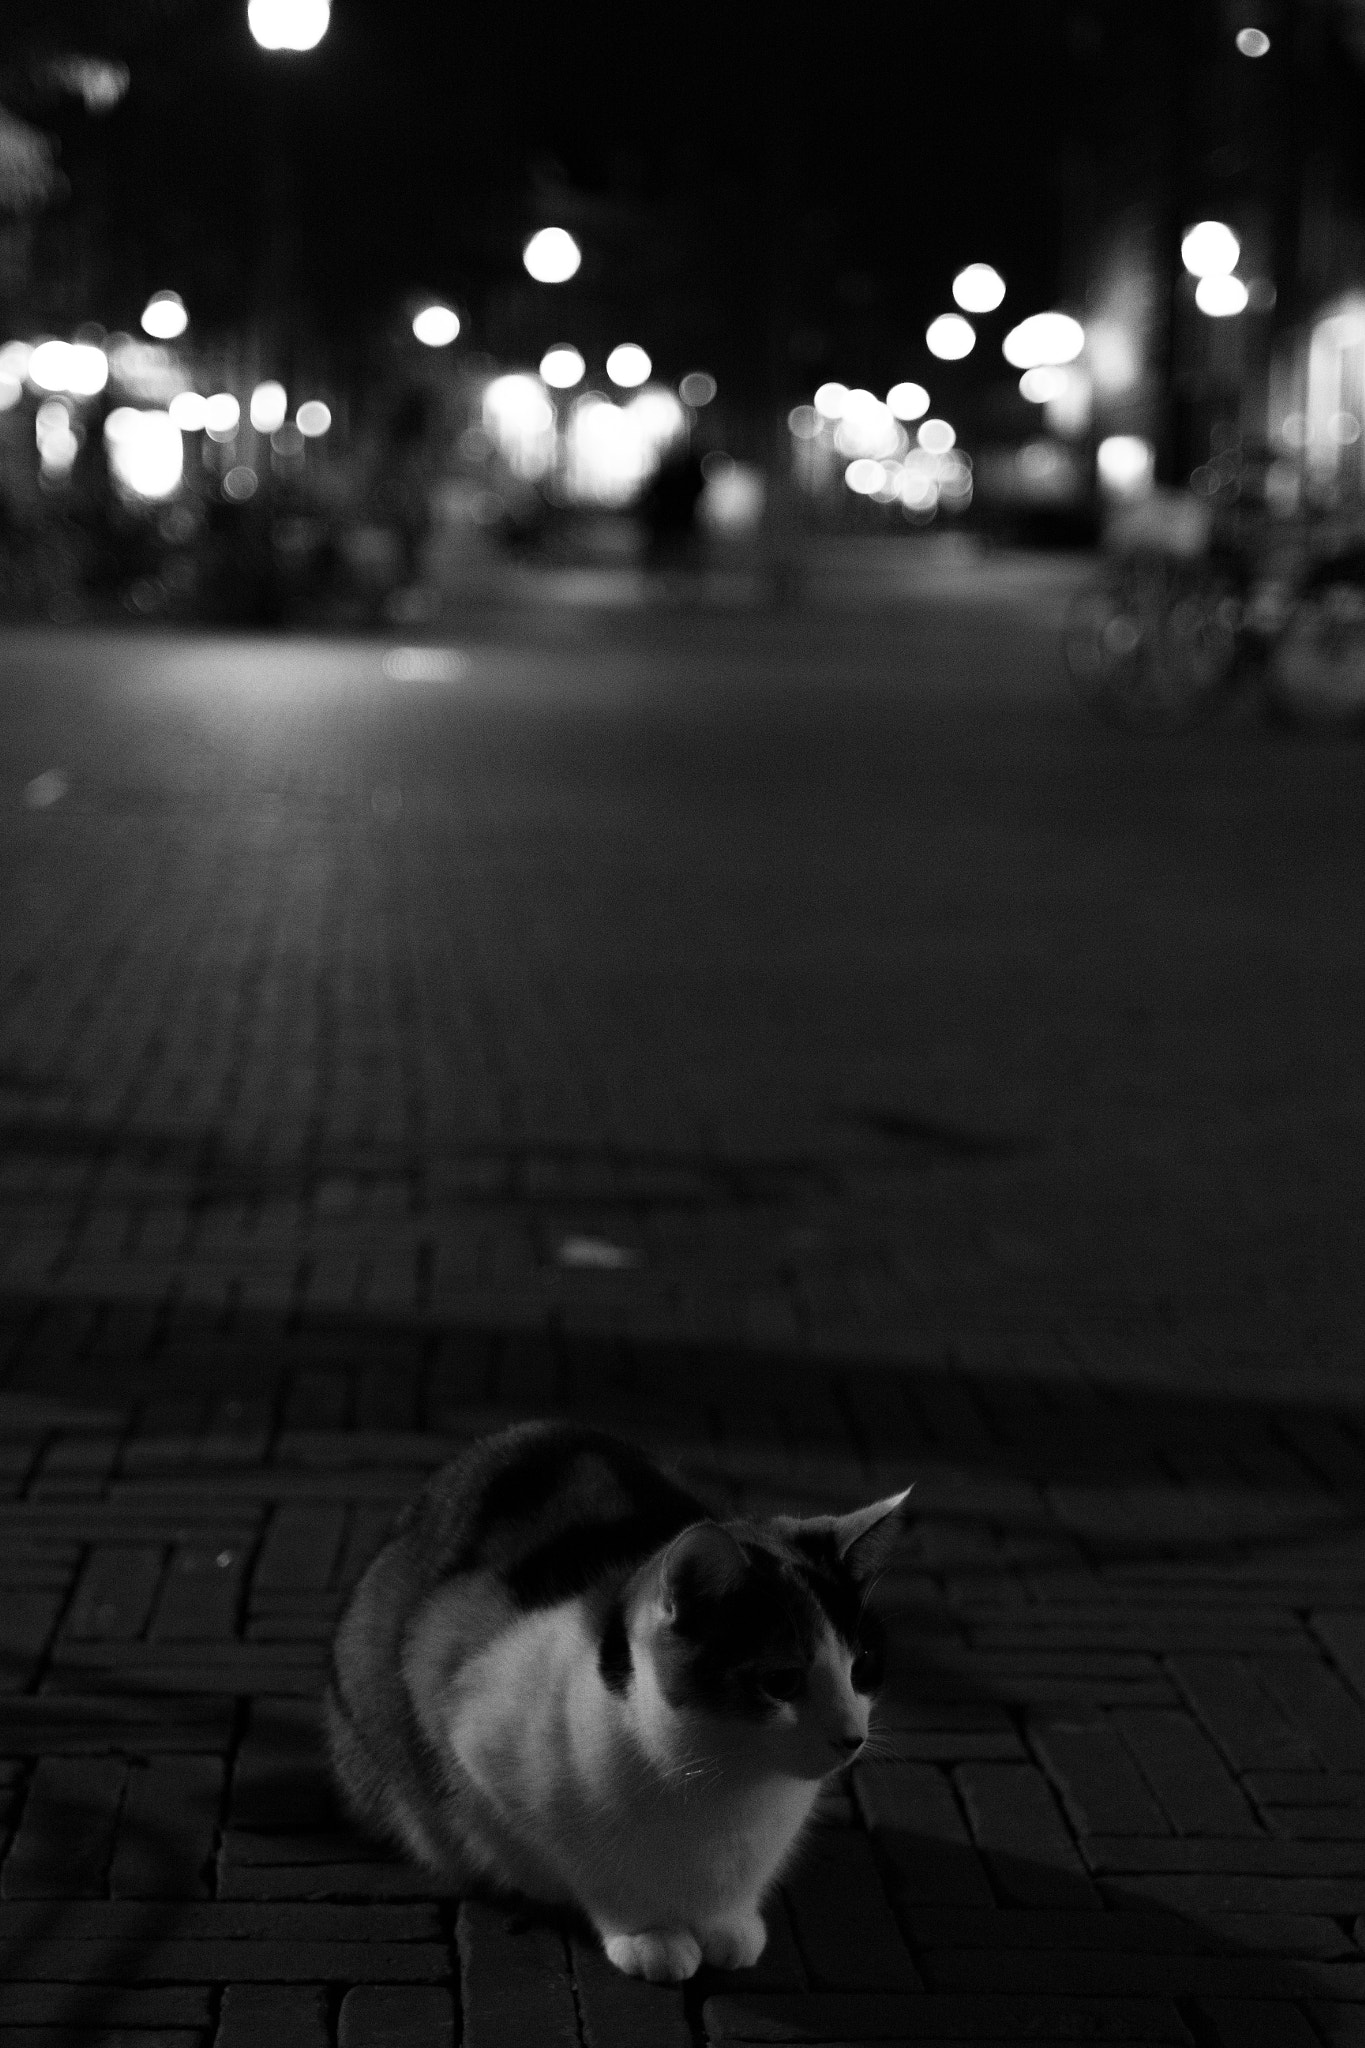 Nikon D7100 + Nikon AF Nikkor 35mm F2D sample photo. Cat in the city photography